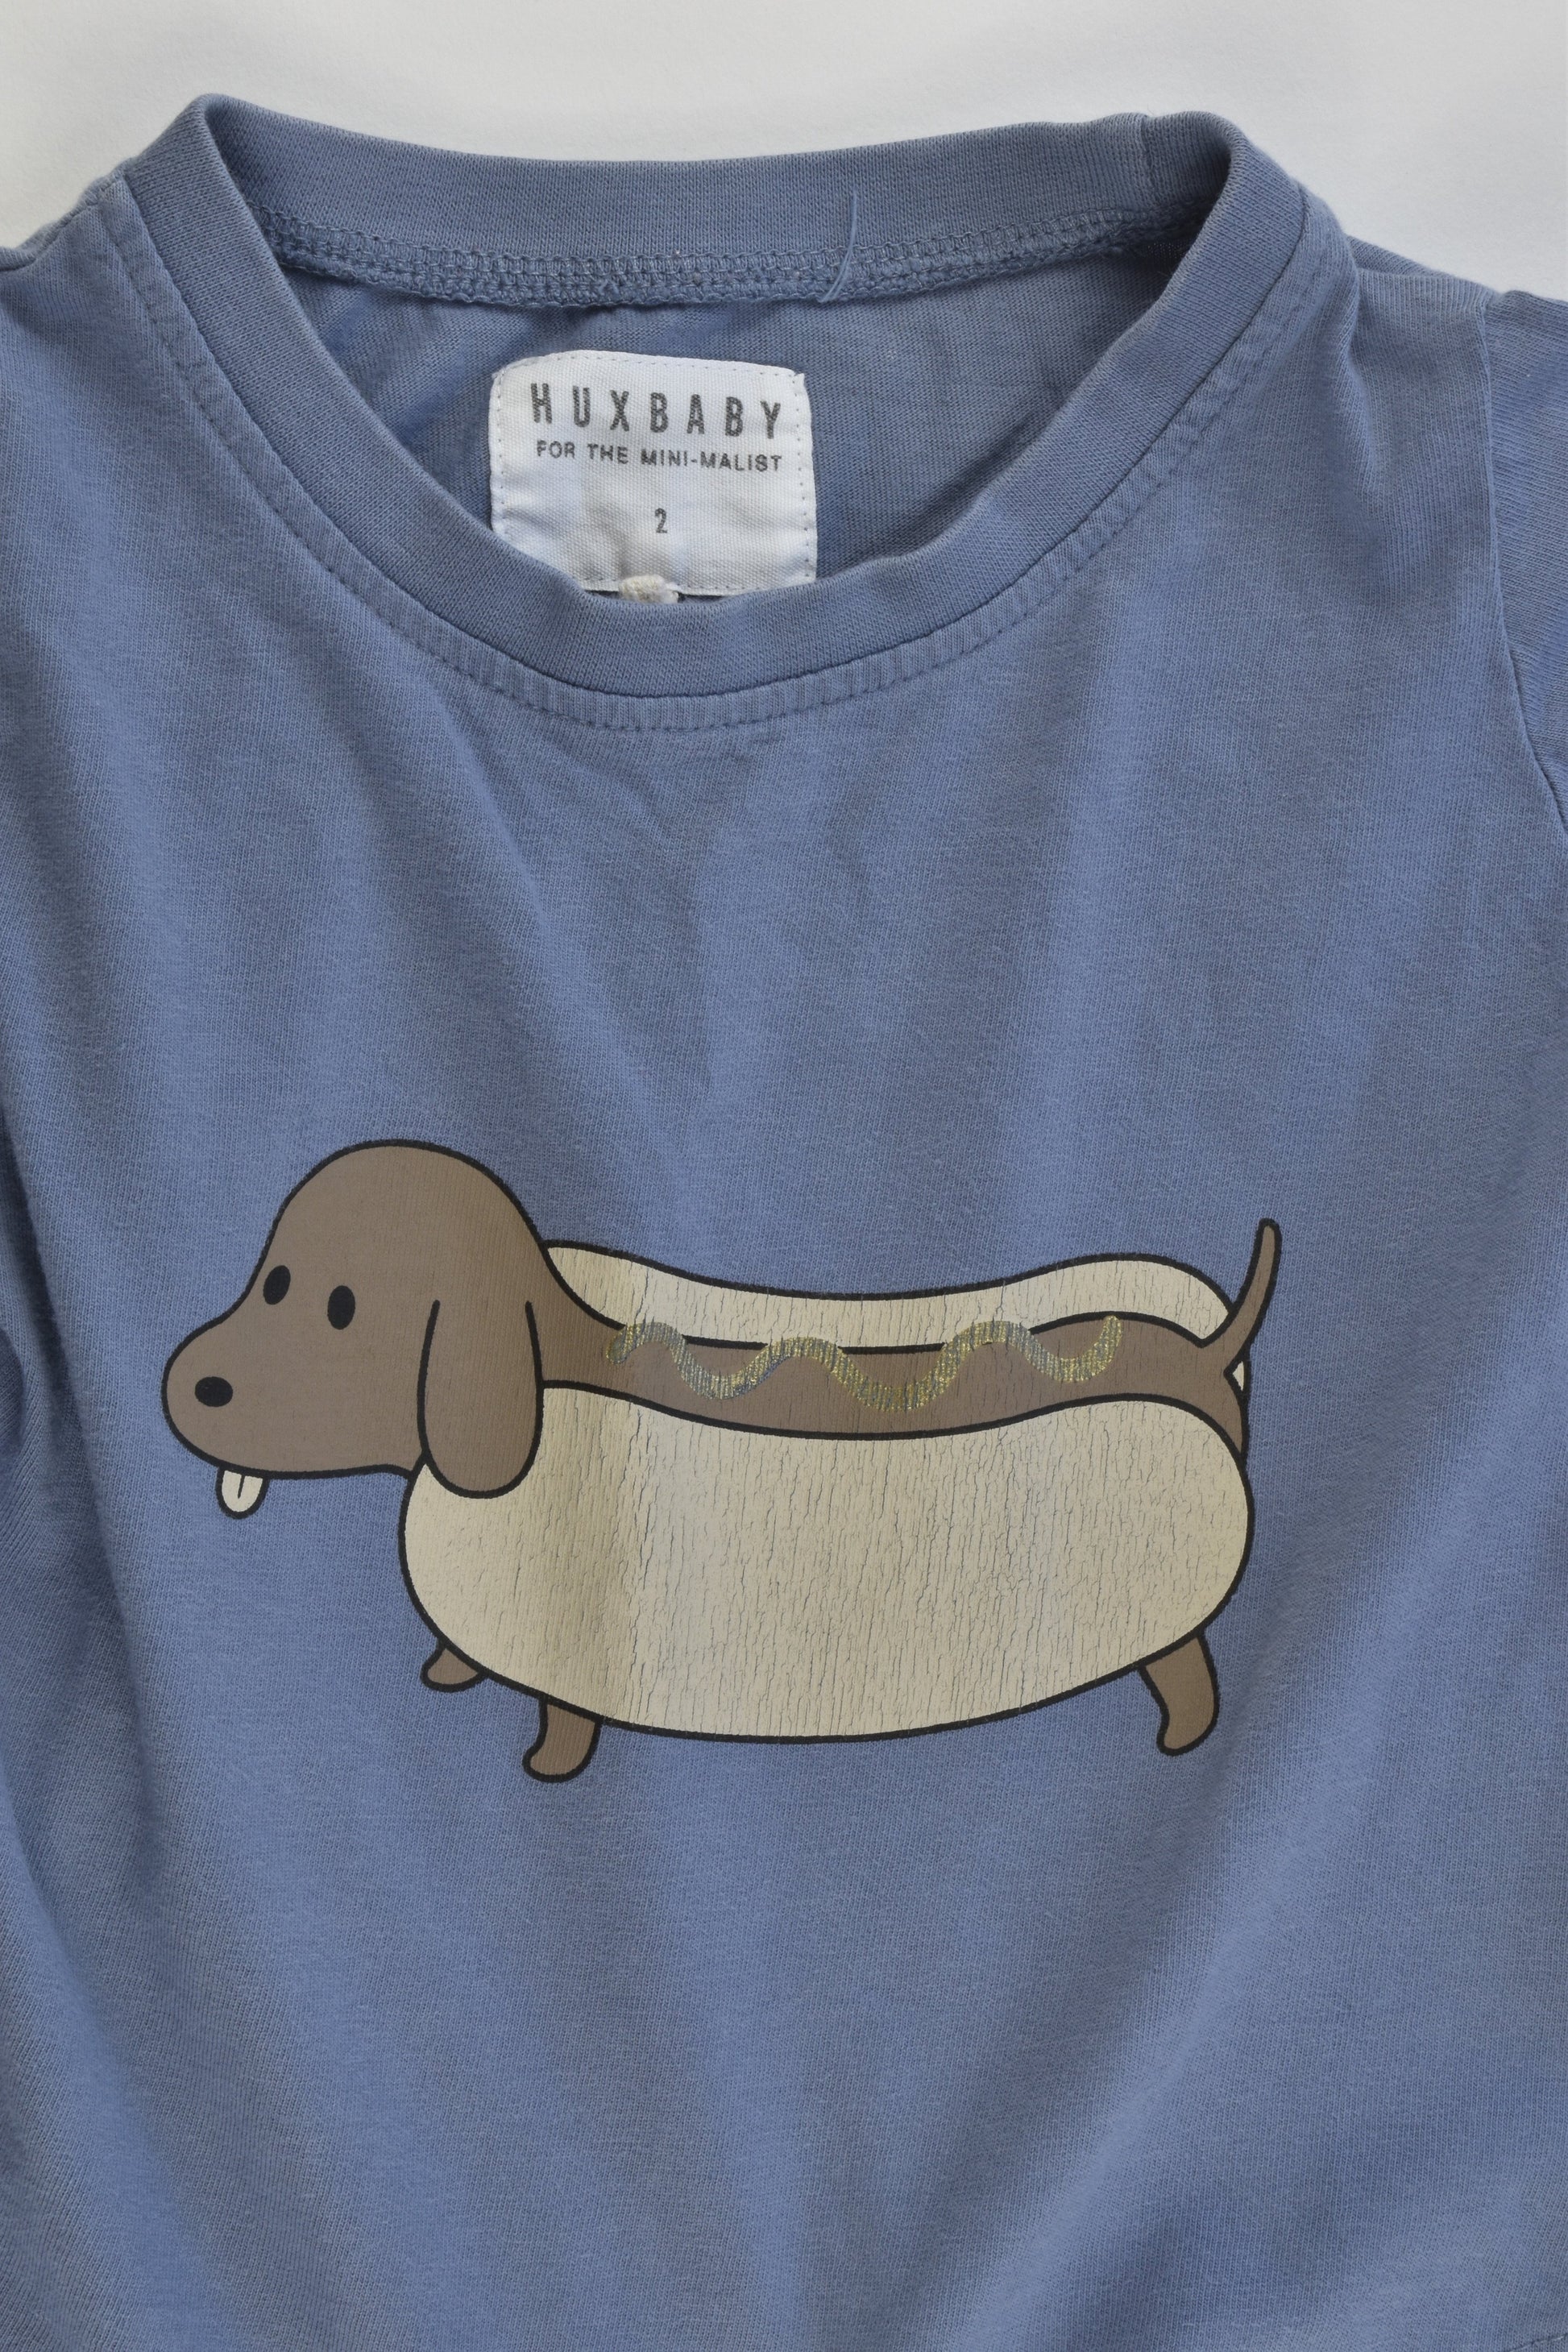 Huxbaby Size 2 Sausage Dog T-shirt